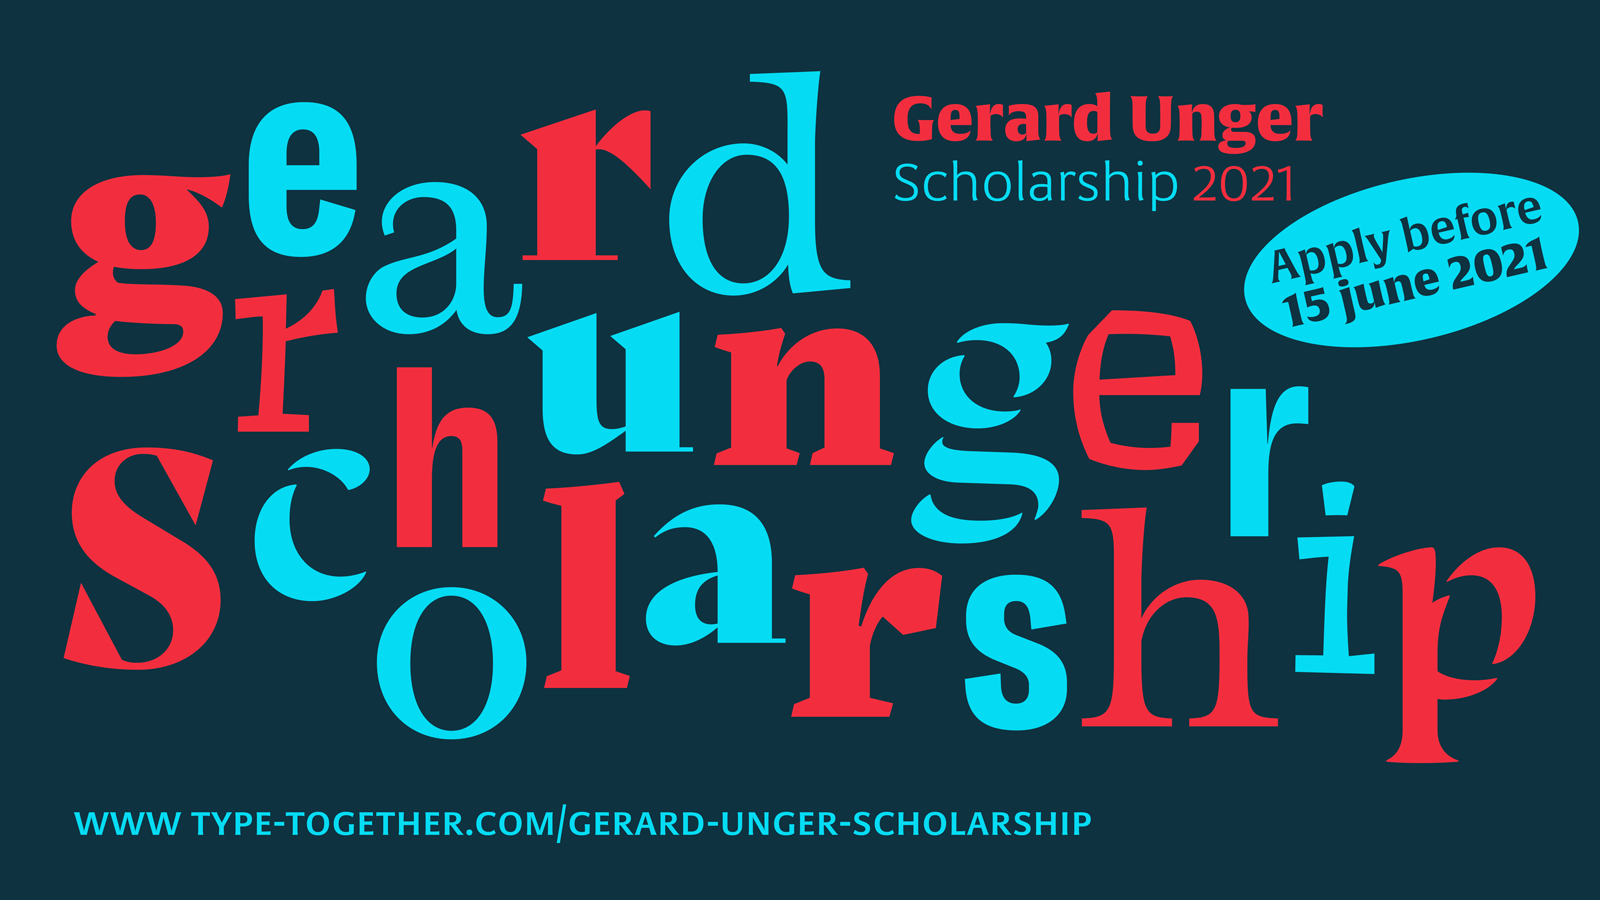 Gerard Unger Scholarship 2021